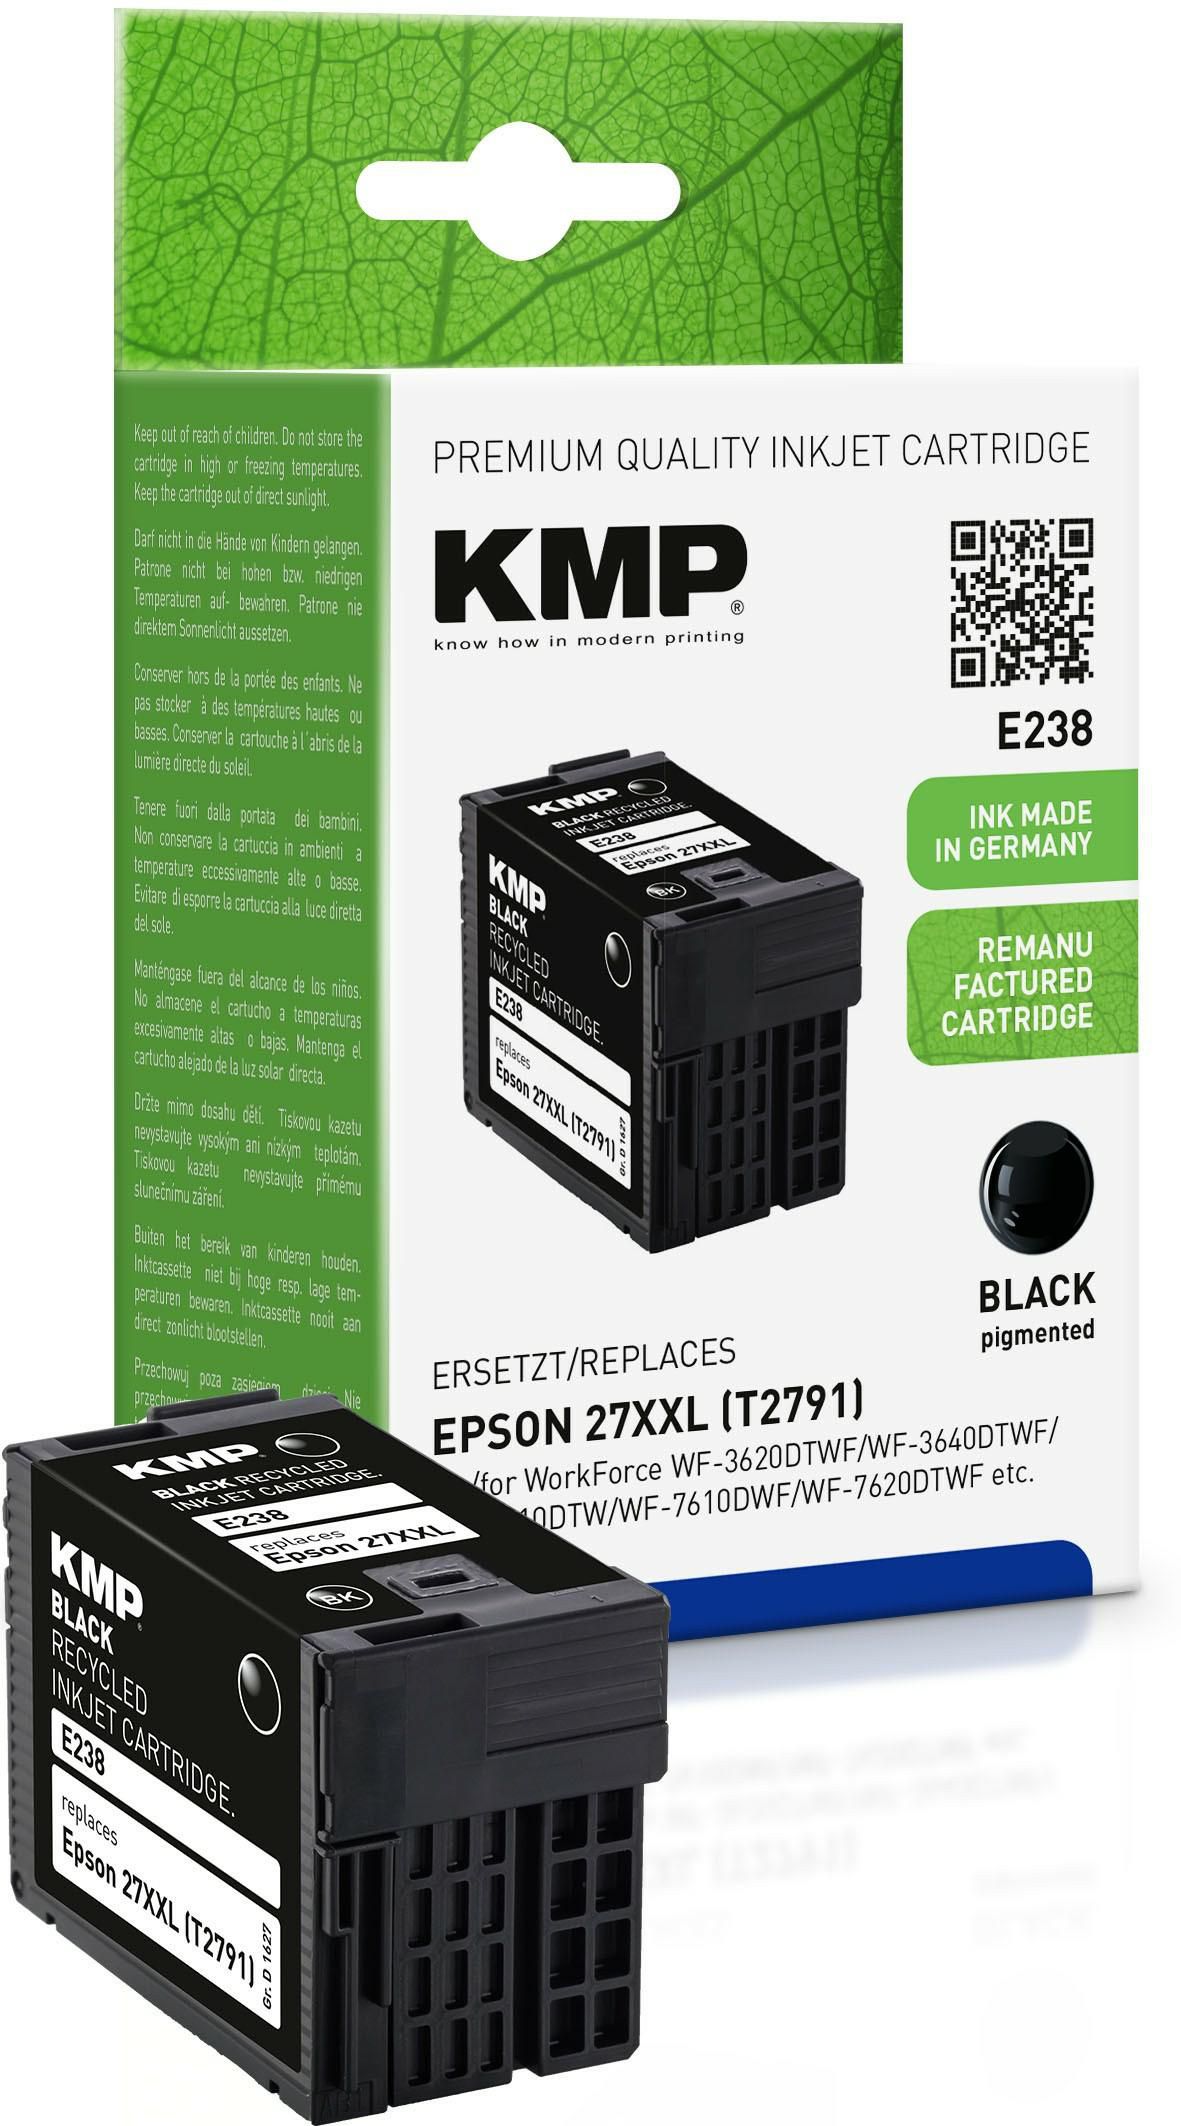 KMP-Printtechnik-AG 1627,4201 E186 ink cartridge black 